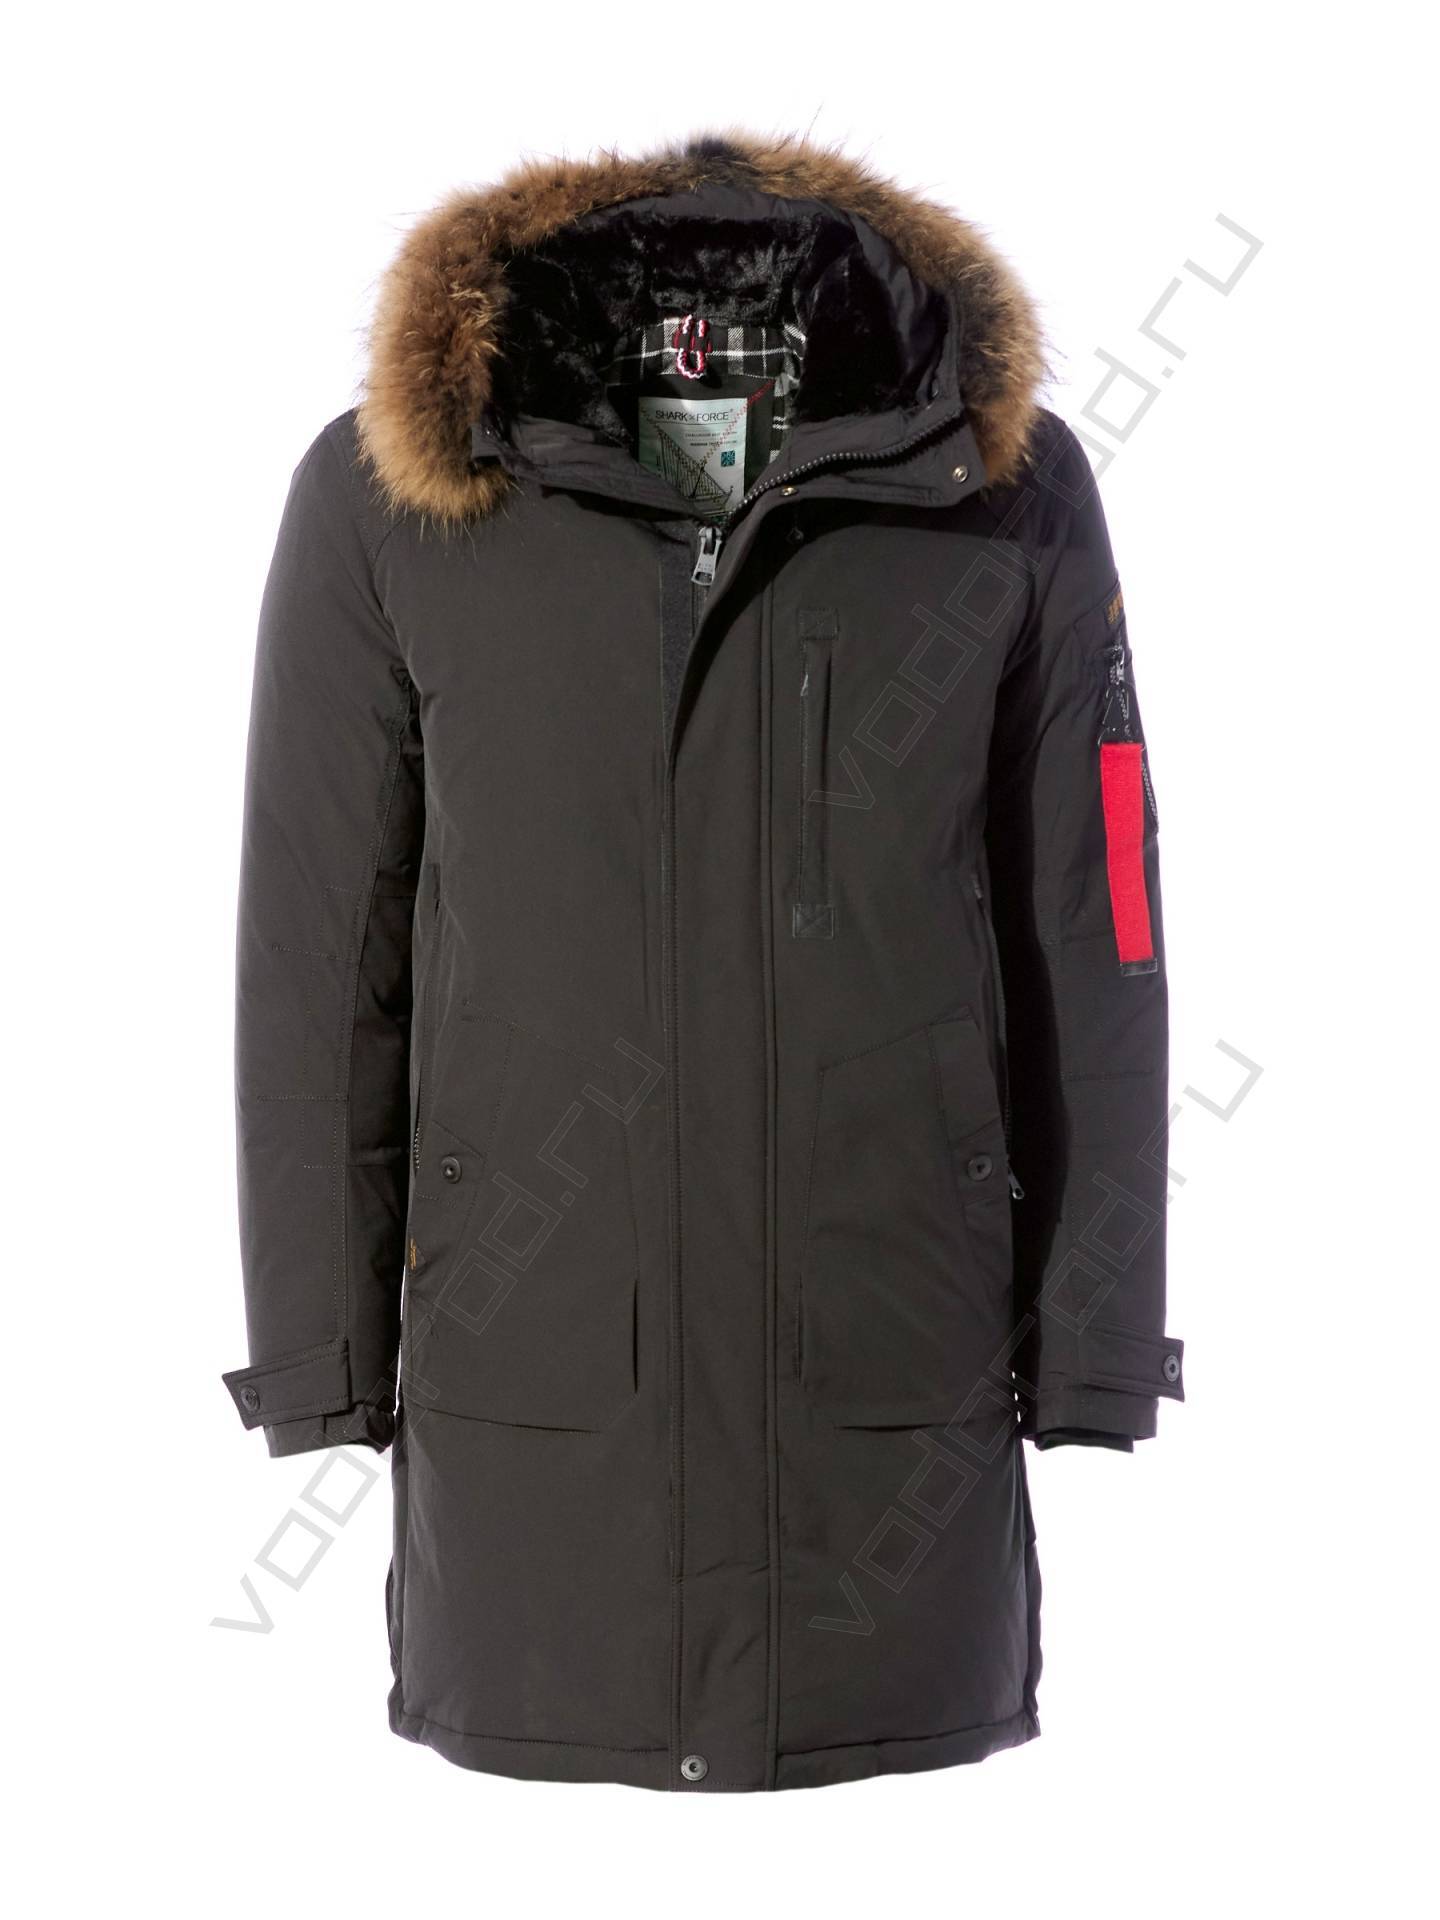 Куртка зимняя SHARK FORCE 22114 (черная)